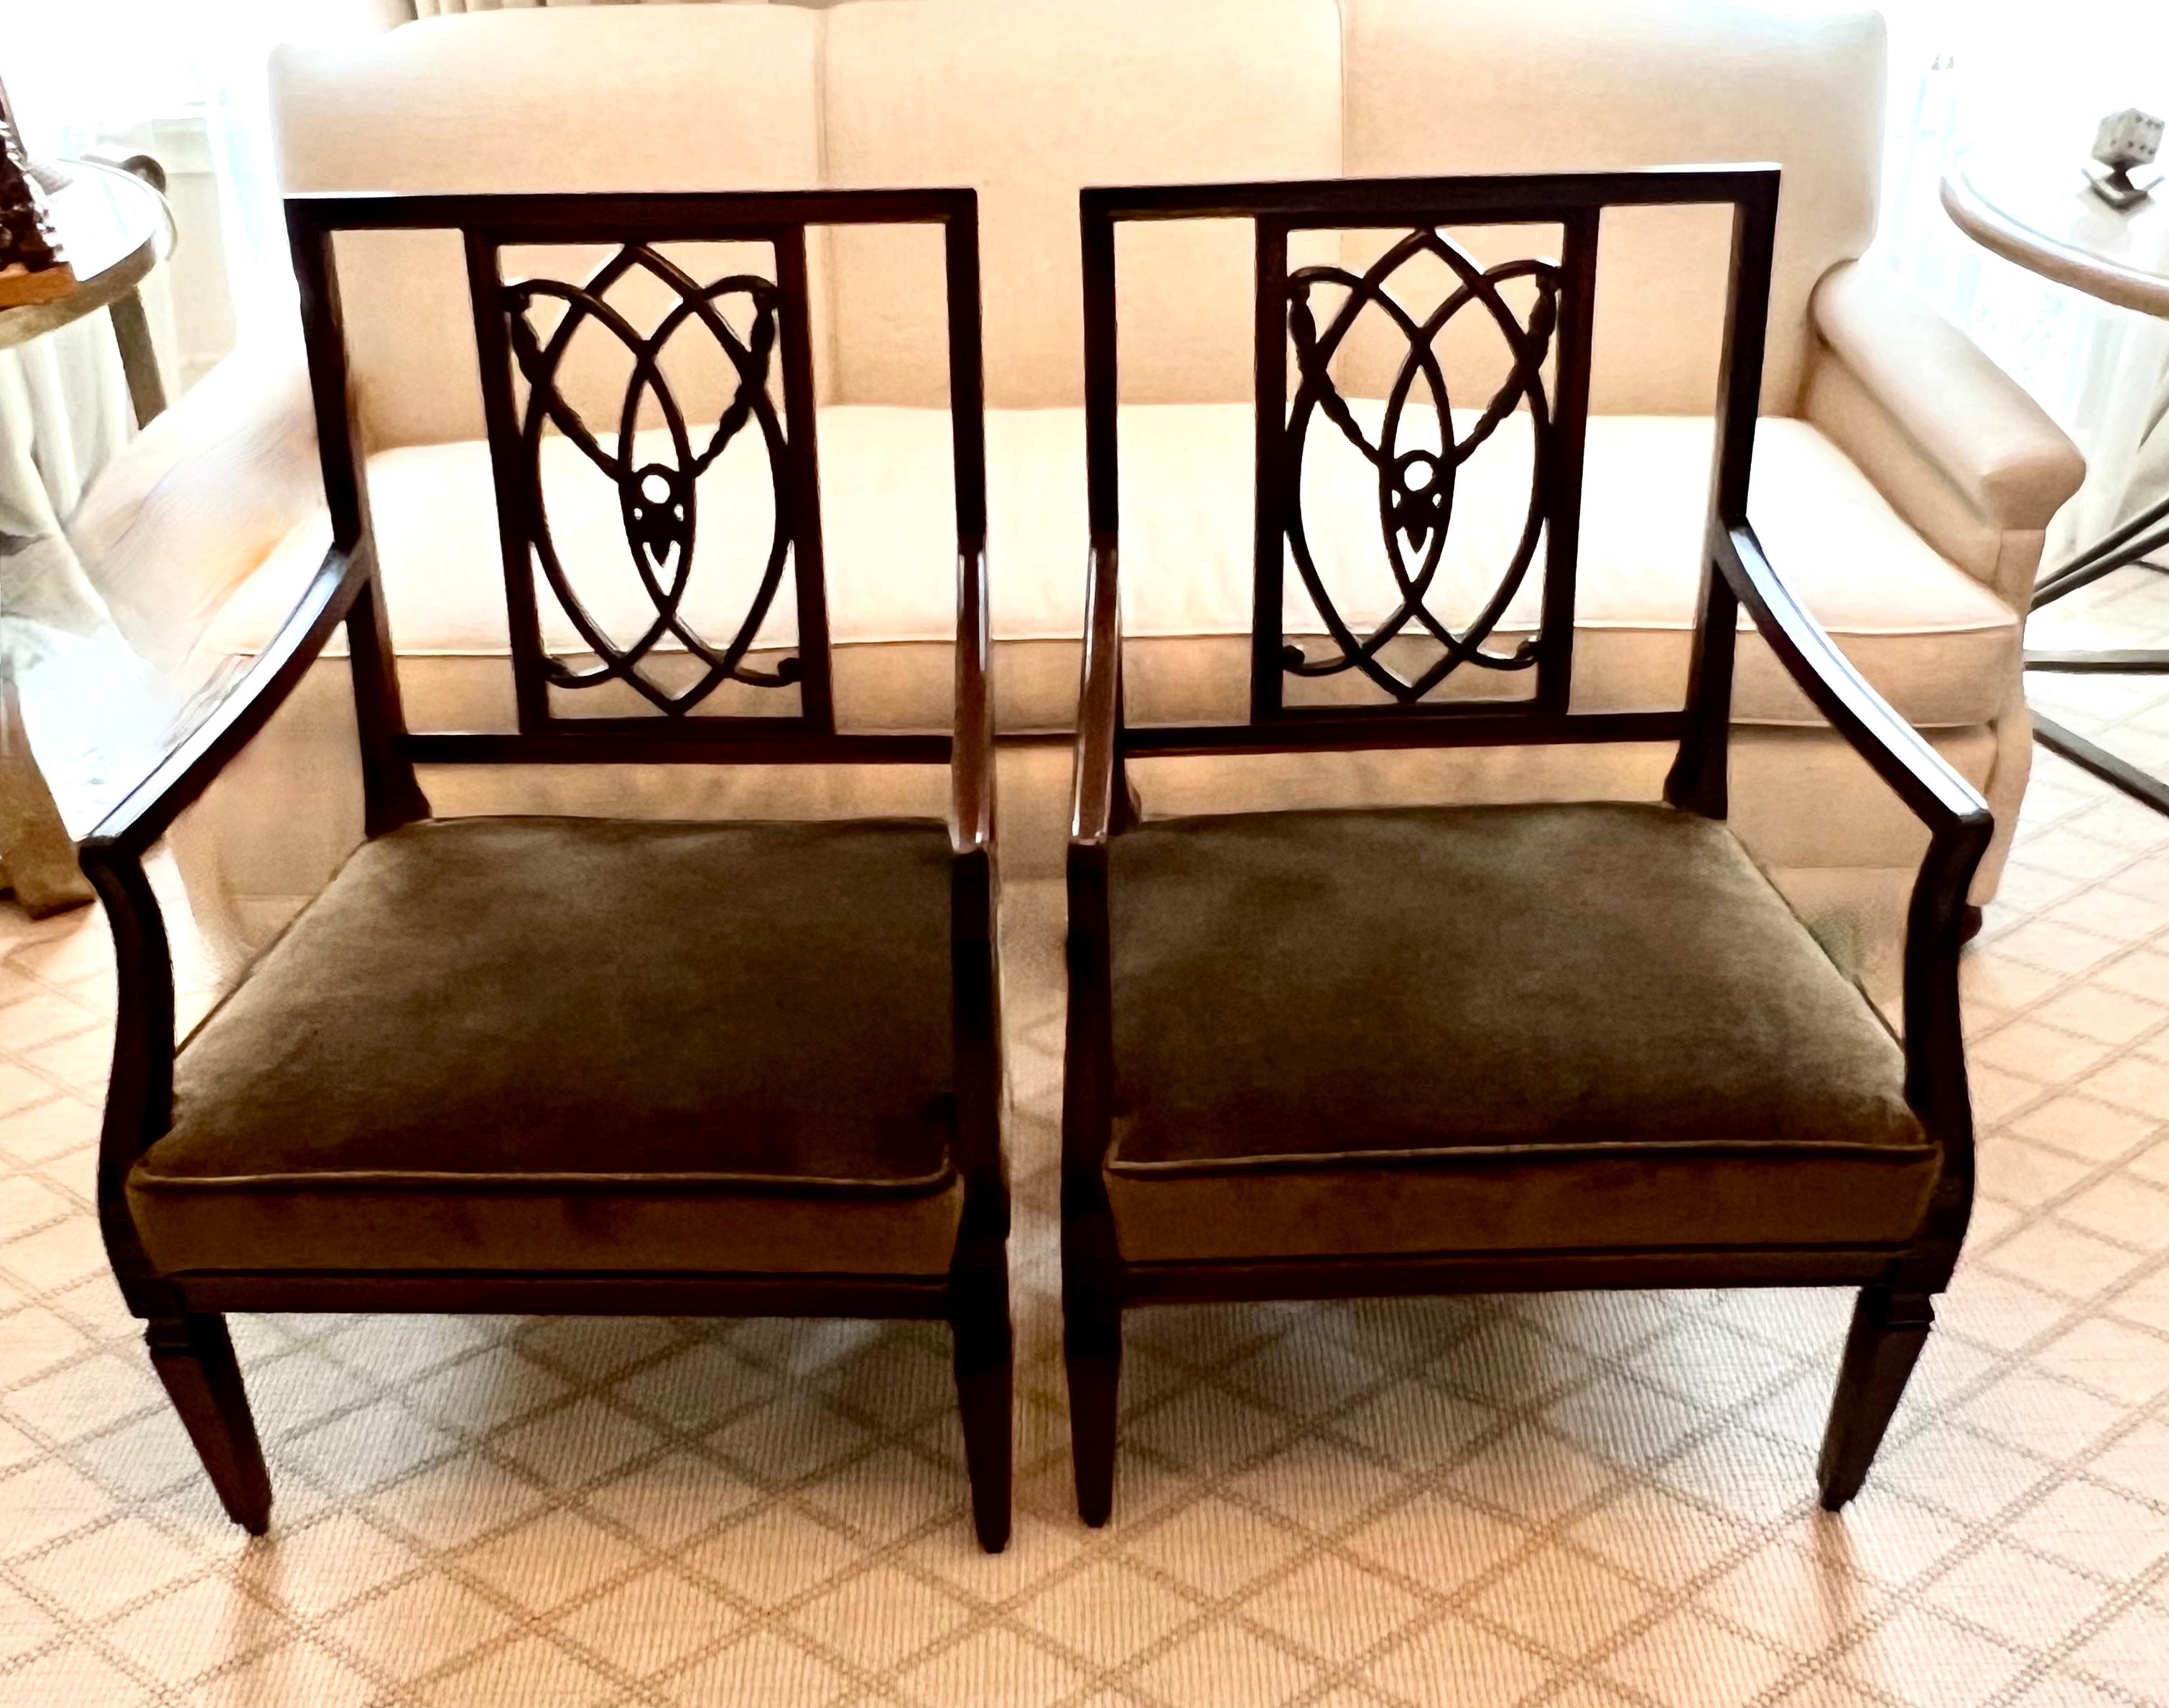 Paar neu aufgearbeitete und gepolsterte George lll oder Hollywood Regency Side oder Bergere Chairs in Walnuss Finish mit Mohair Polsterung.

Das Paar hat eine wunderschöne geschnitzte Rückenlehne, ist breit und sehr bequem - ein Kompliment für